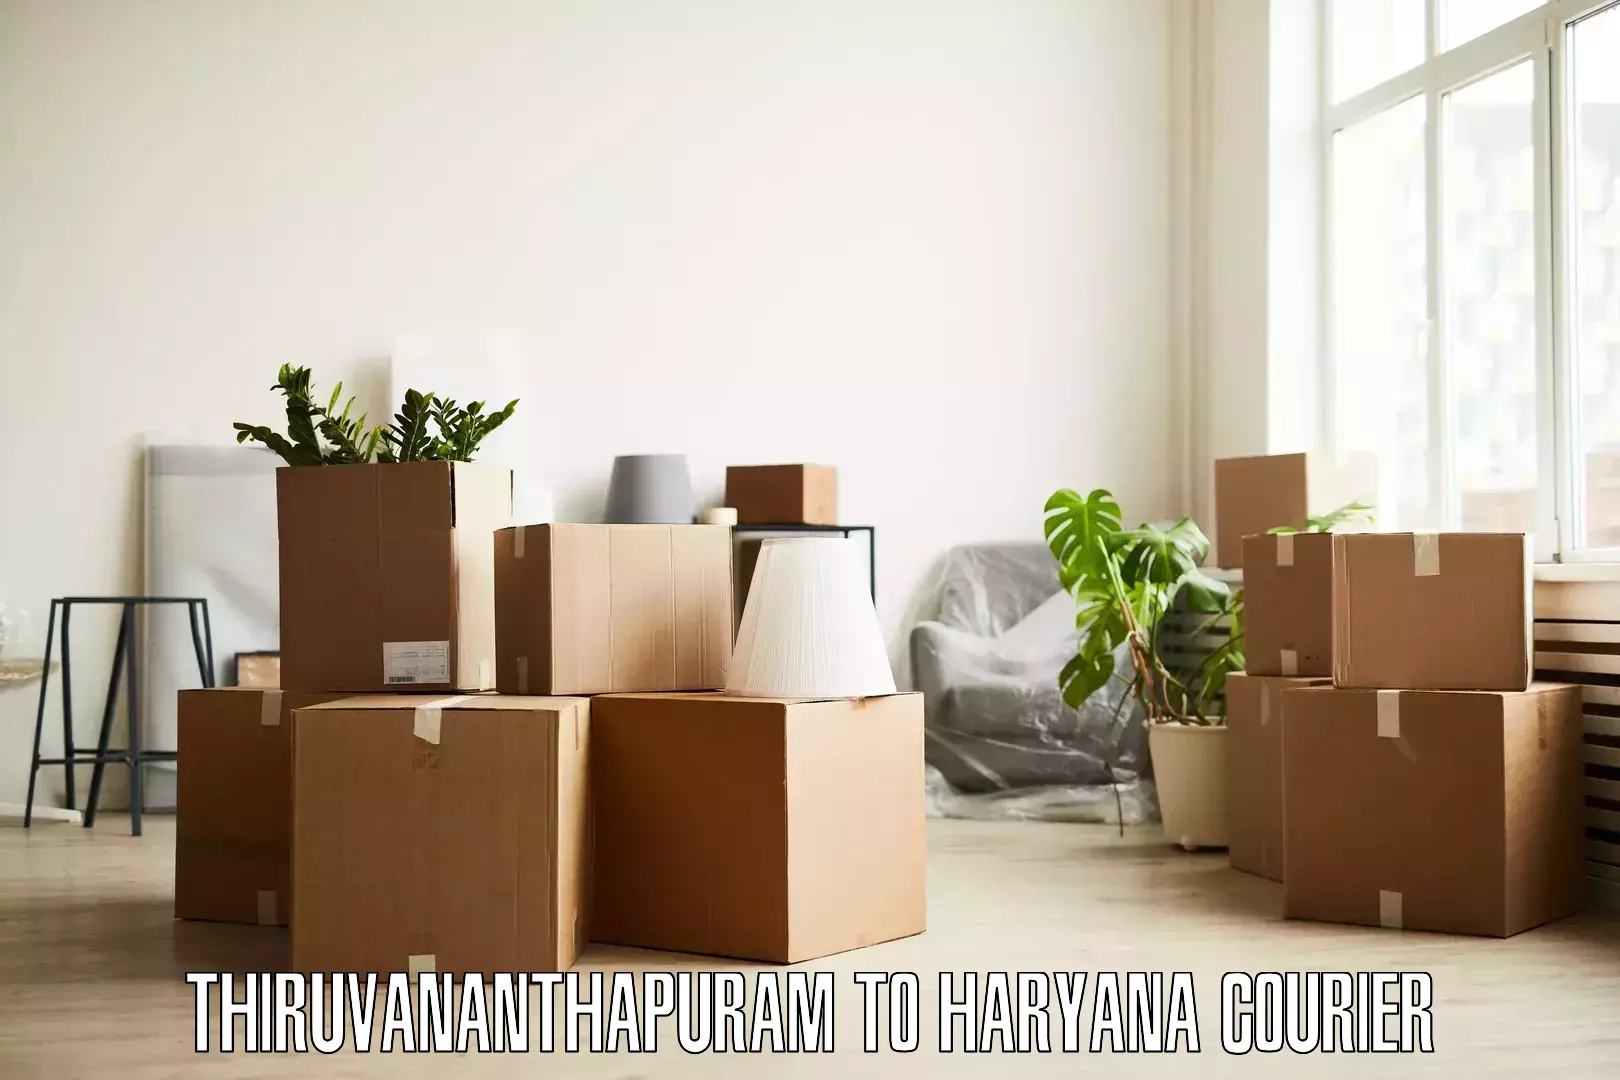 Efficient packing and moving Thiruvananthapuram to Gohana